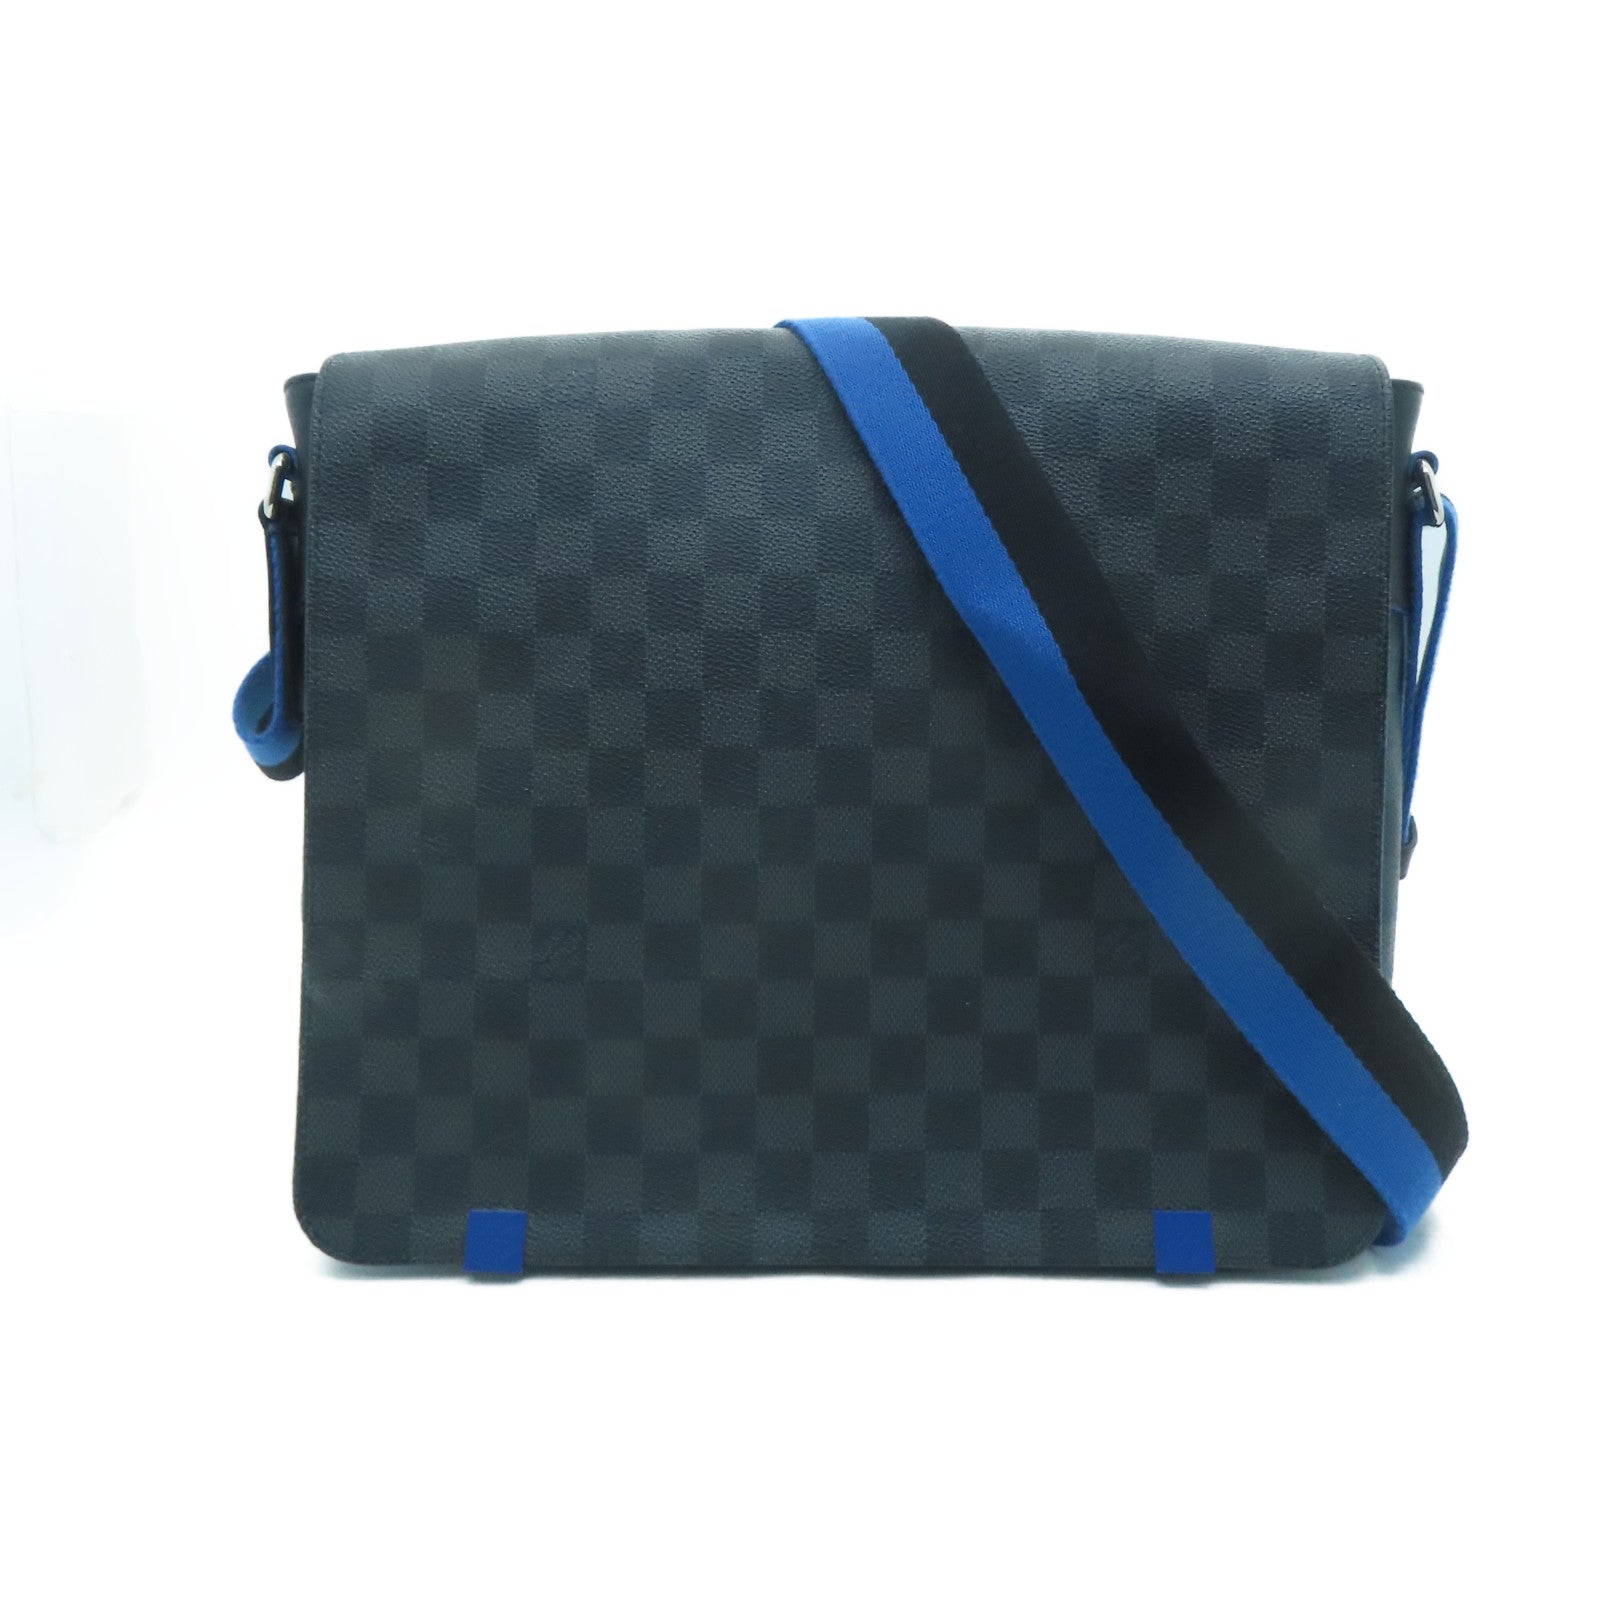 Louis Vuitton Blue Shoulder Bags